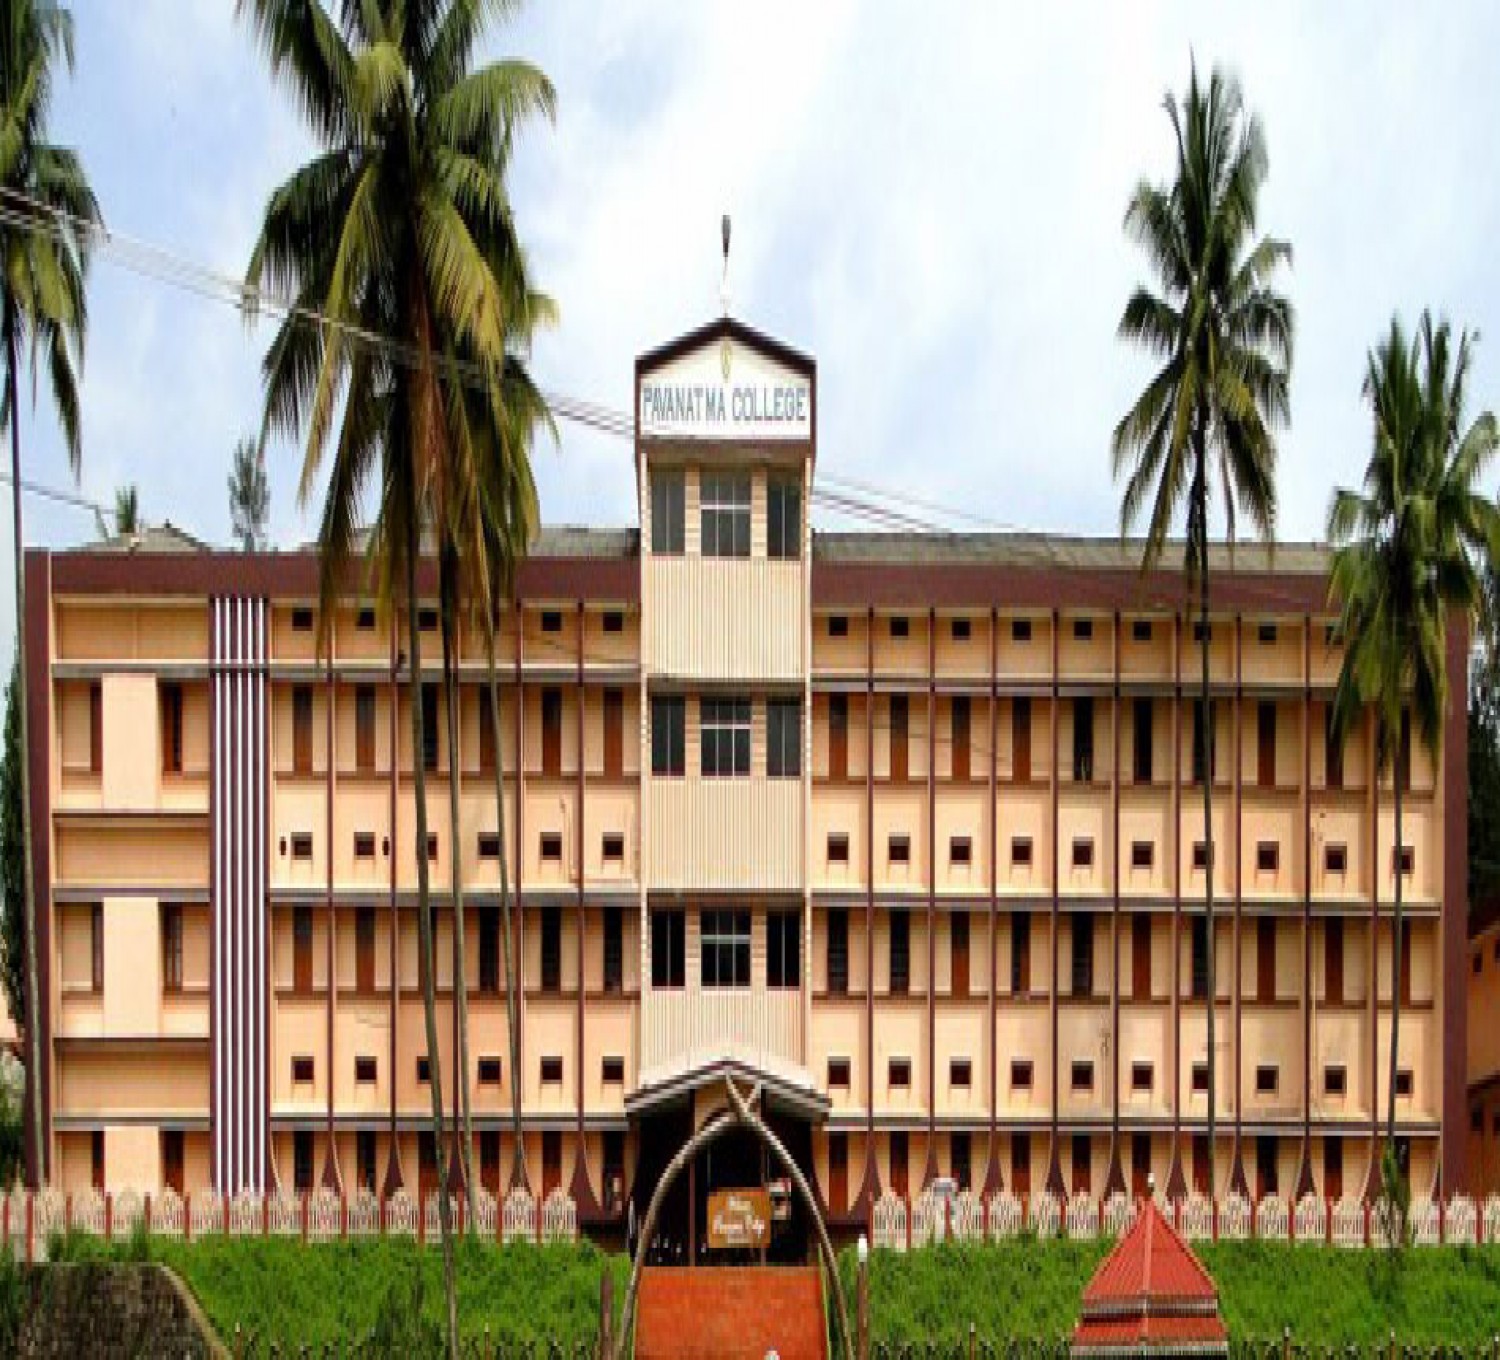 Pavanatma College-cover